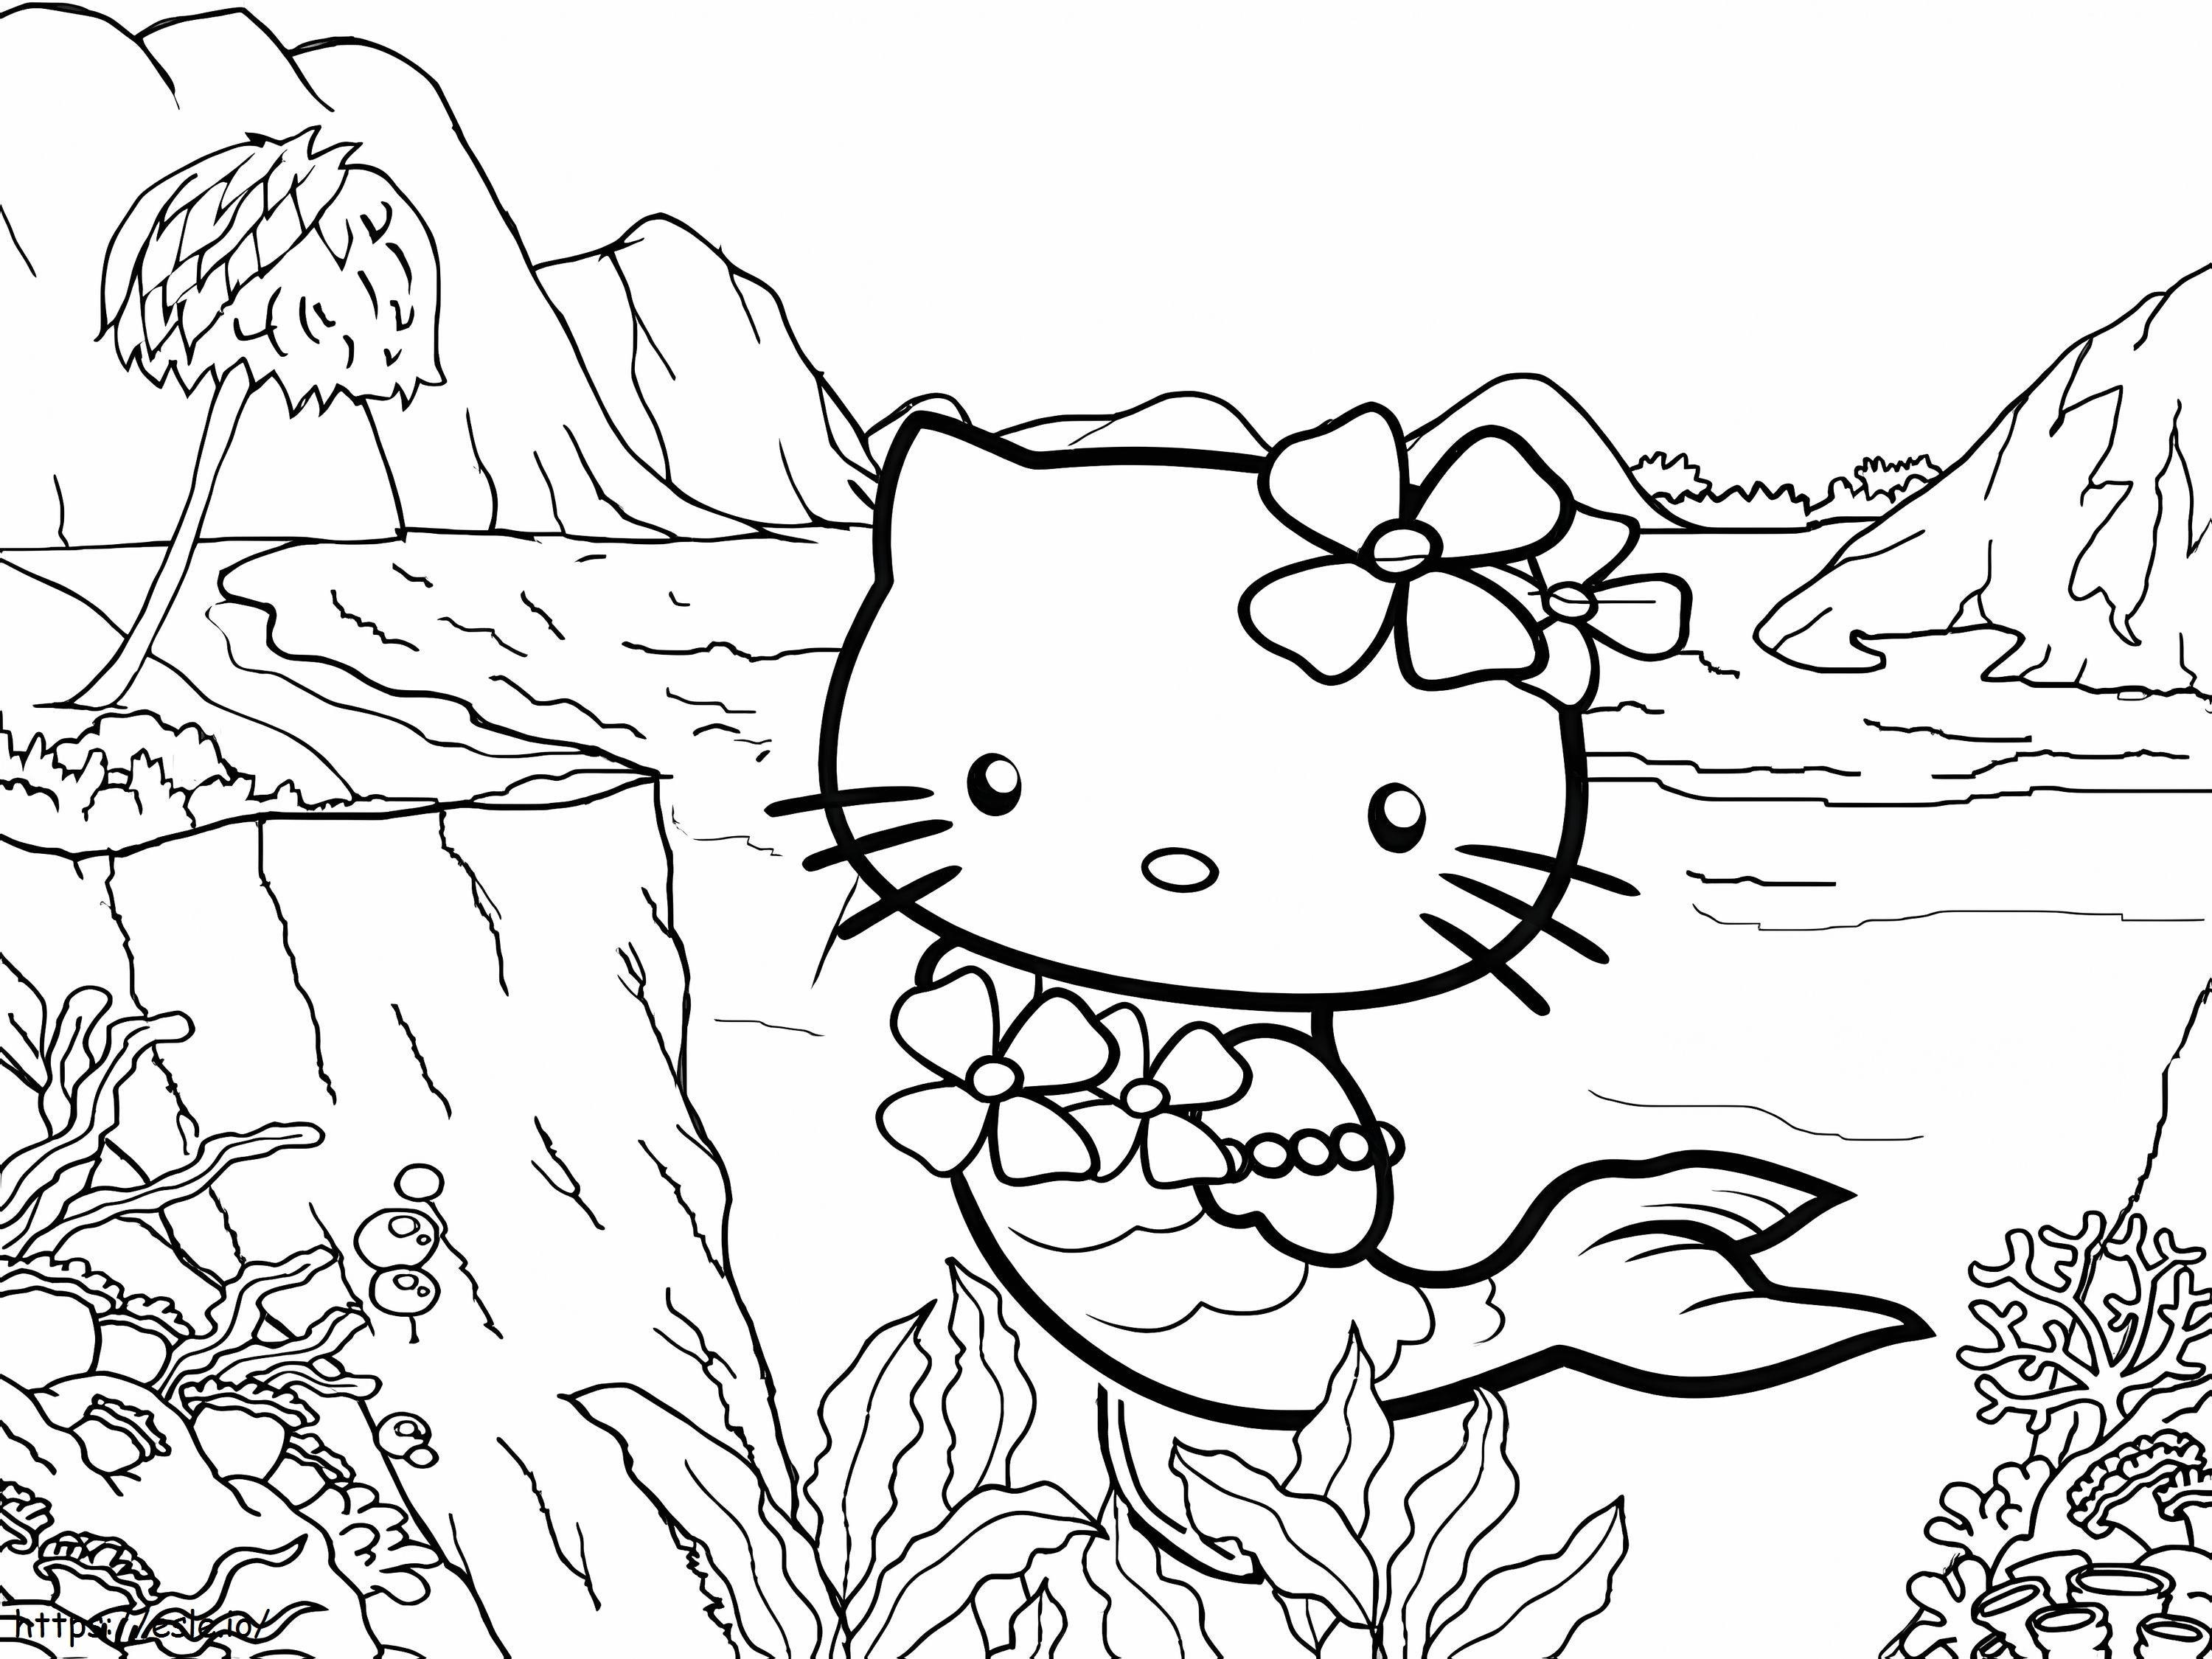 Bonita sirena de Hello Kitty para colorear